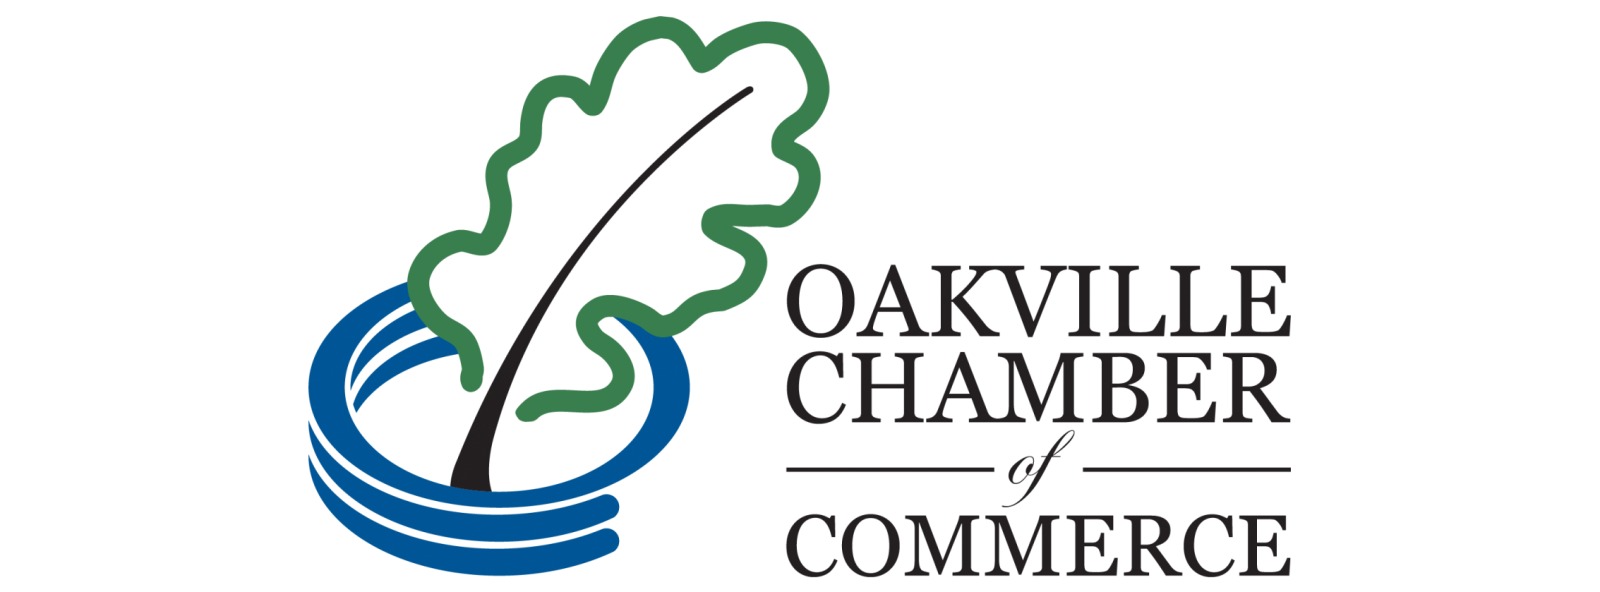 Discover Ability Halton Peel Oakville Chamber of Commerce